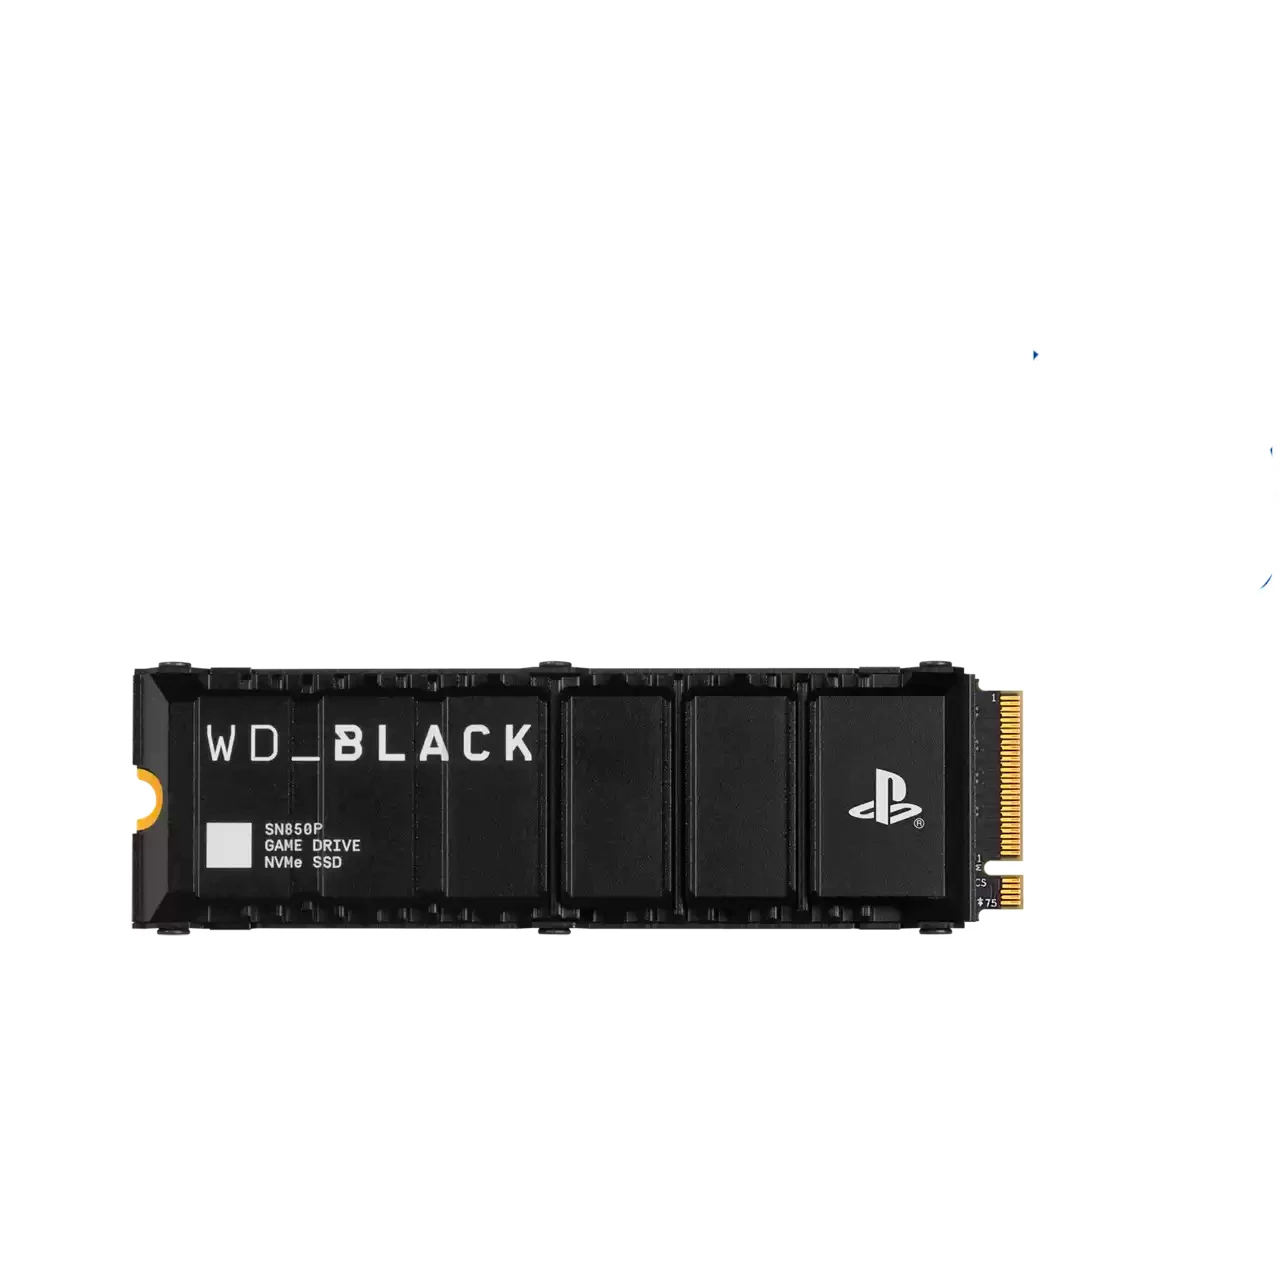 Дополнительная память WD_BLACK 2TB SN850P NVMe SSD for PS5 consoles (WDBBYV0020BNC-WRSN)